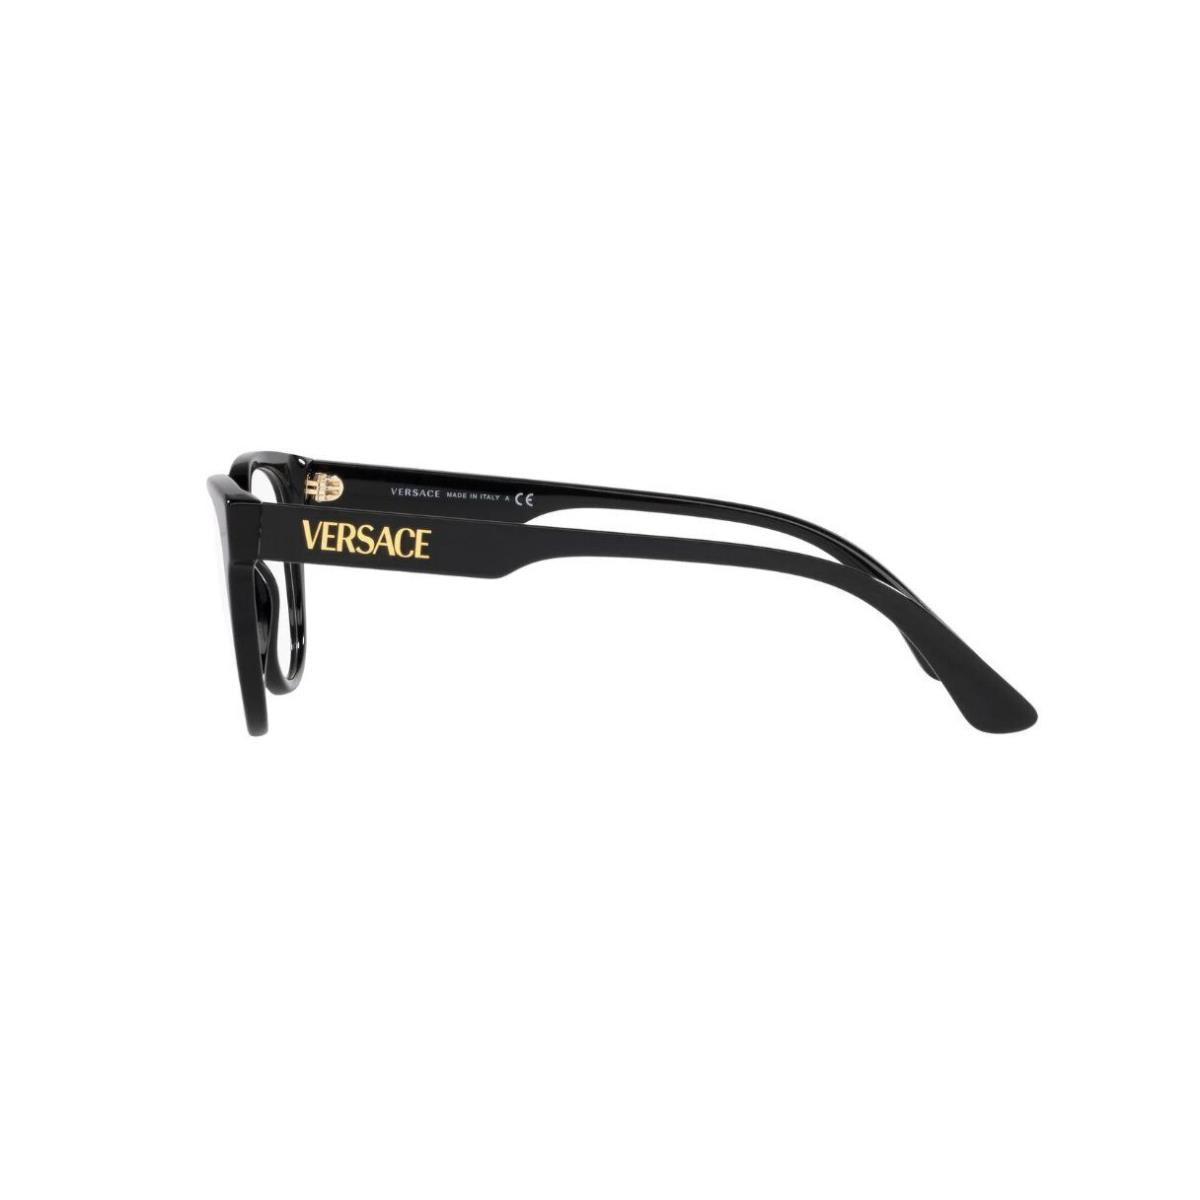 Versace VE 3317 GB1 51mm Black Eyeglasses